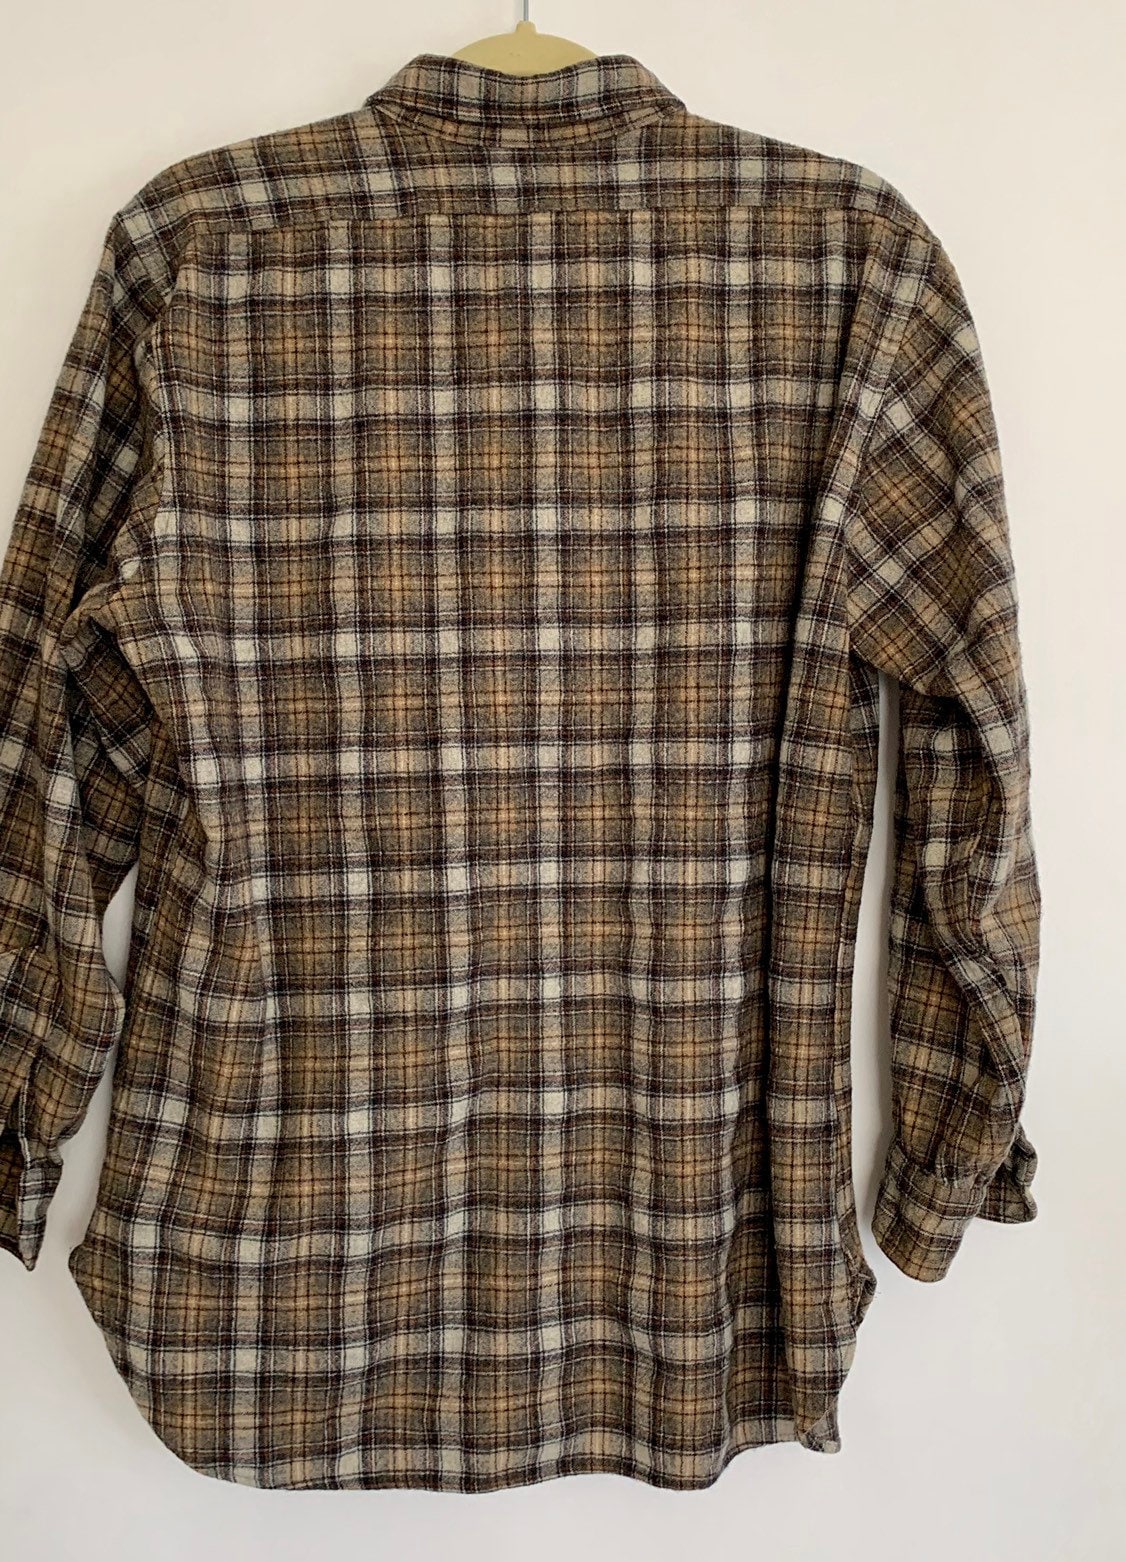 Pendleton Mens Work Shirt Vintage Plaid Made in USA Pendleton Woolen ...